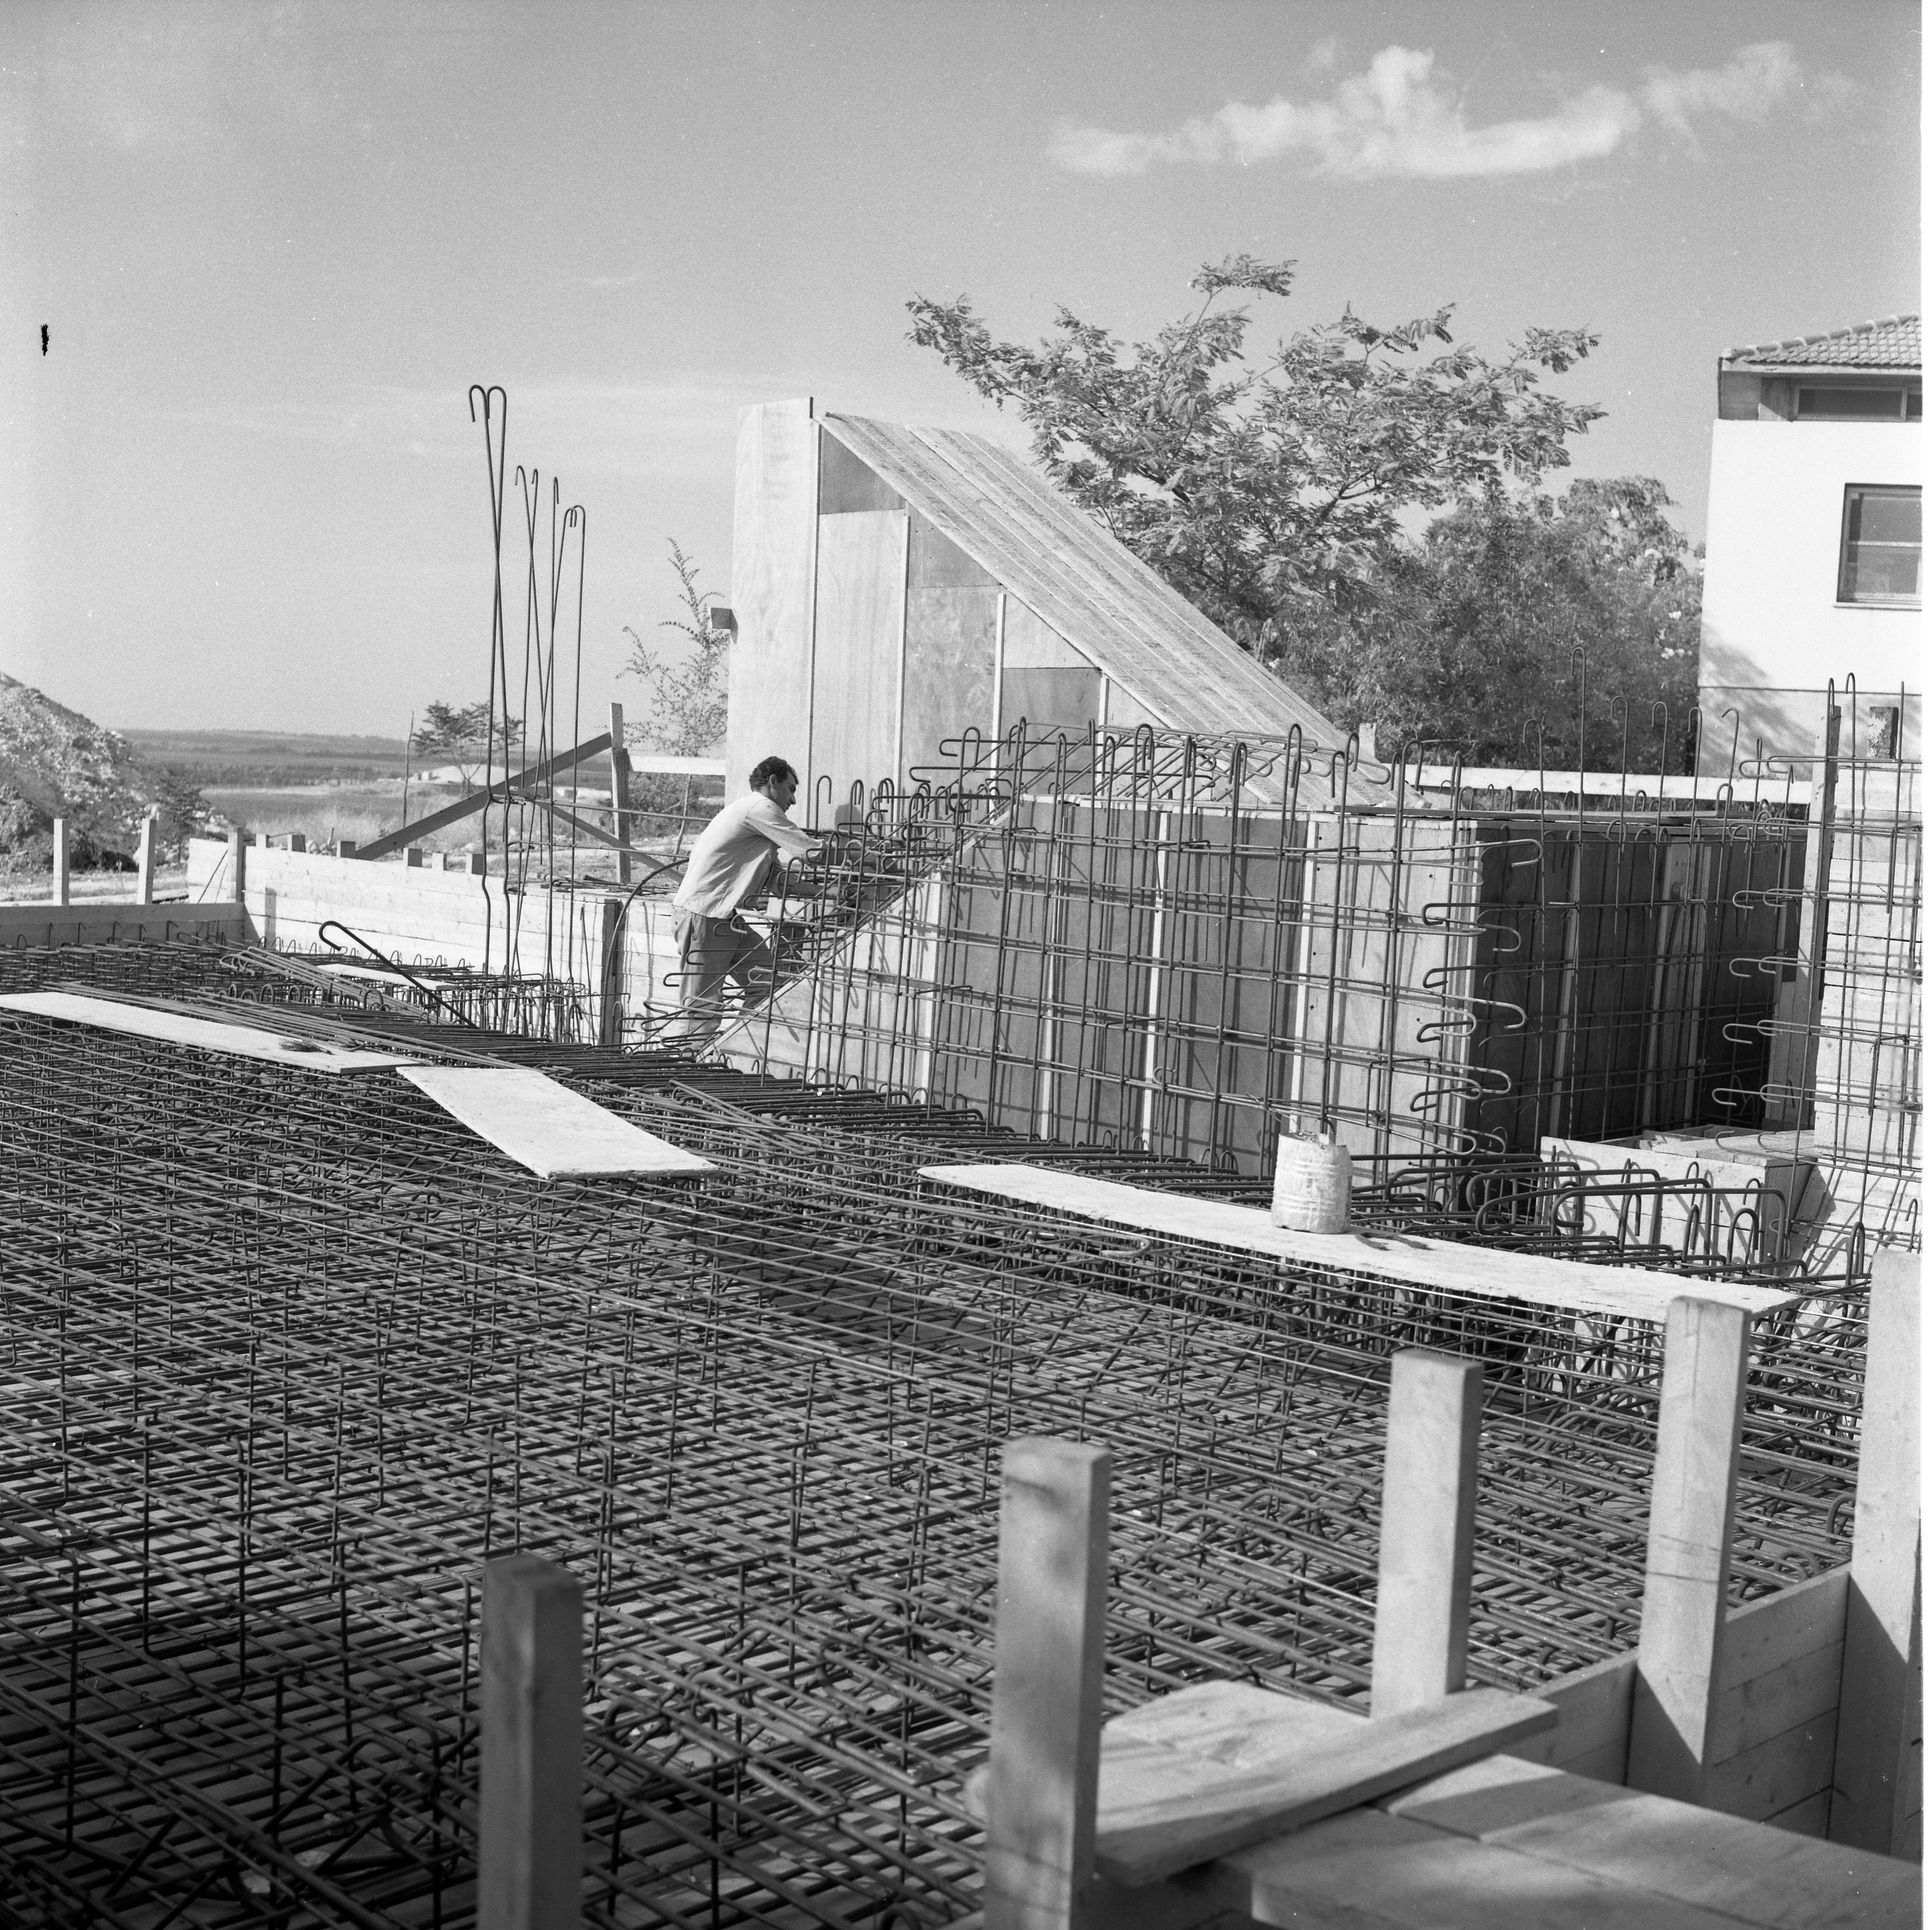  בניית מקלט חדר האוכל; 1969